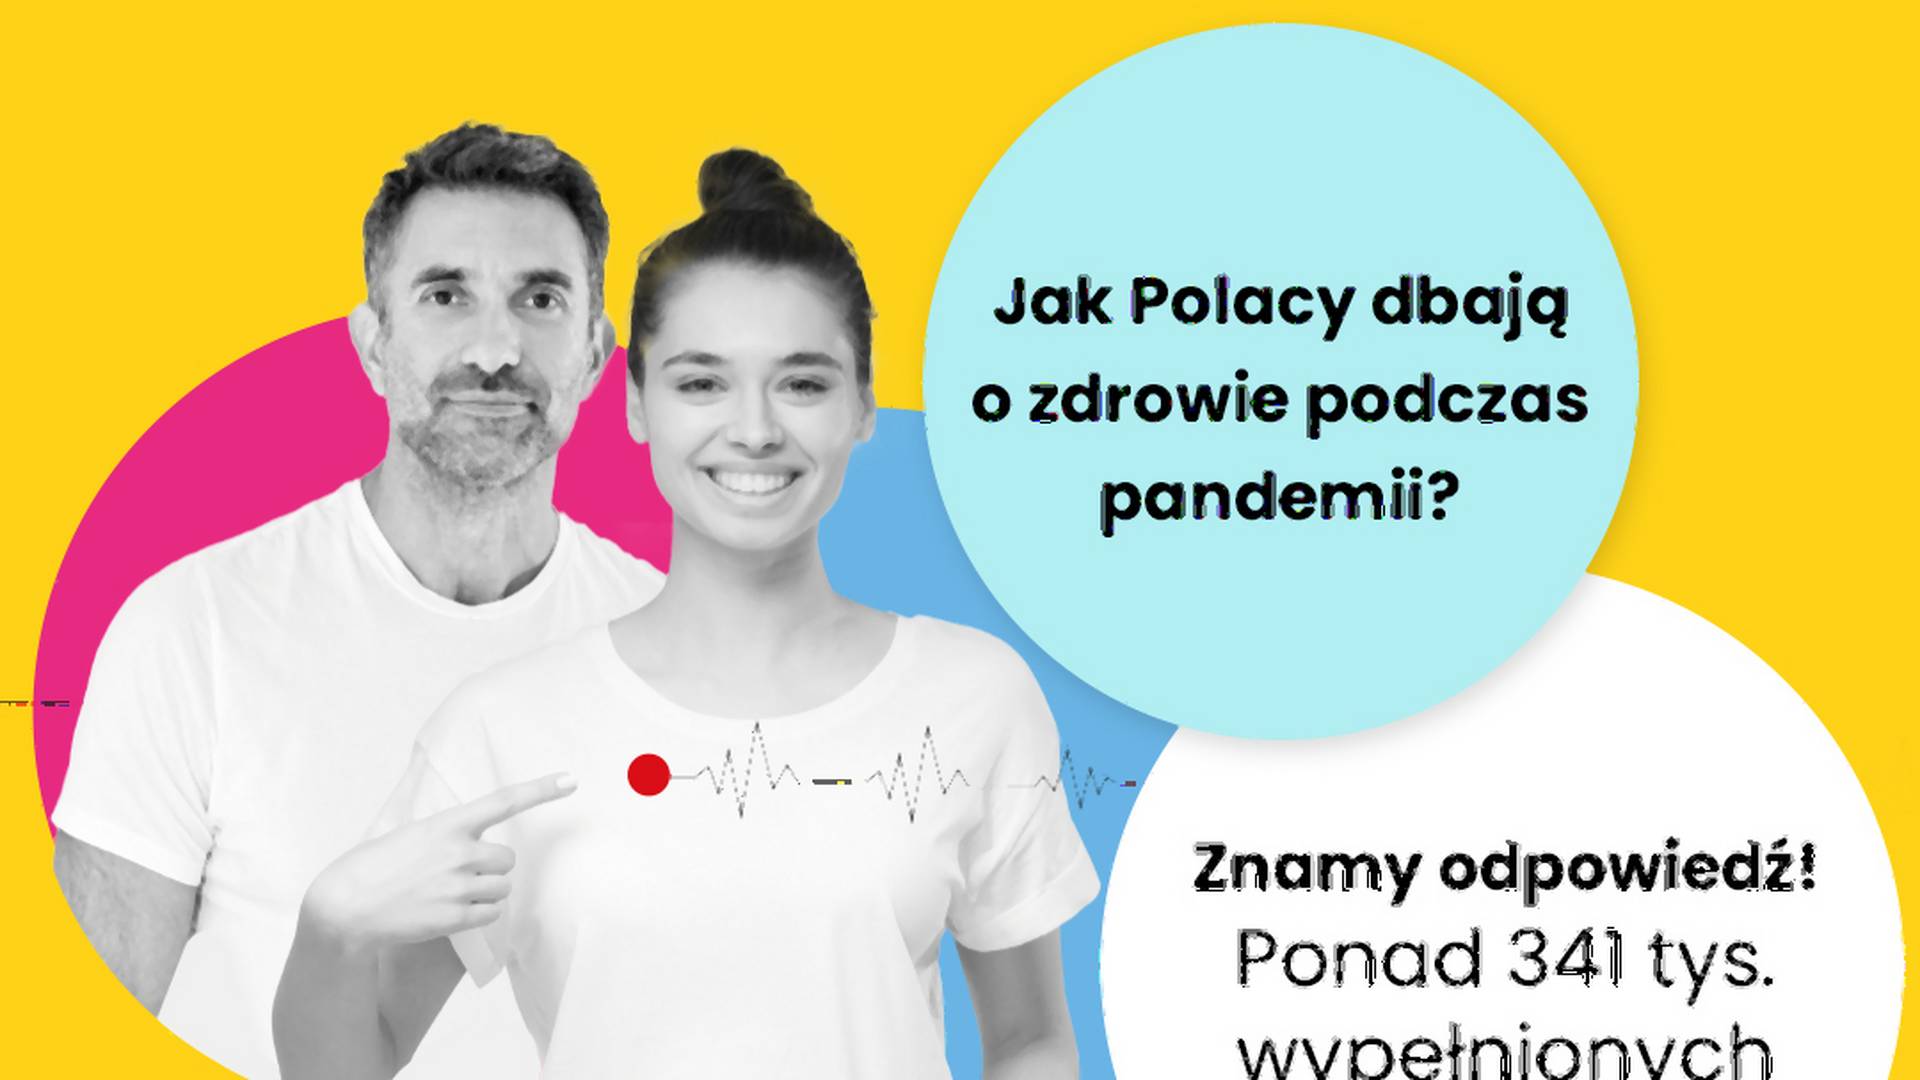 Narodowy Test Zdrowia Polaków 2021. Oto jak zmieniło się podejście do zdrowia w czasie pandemii